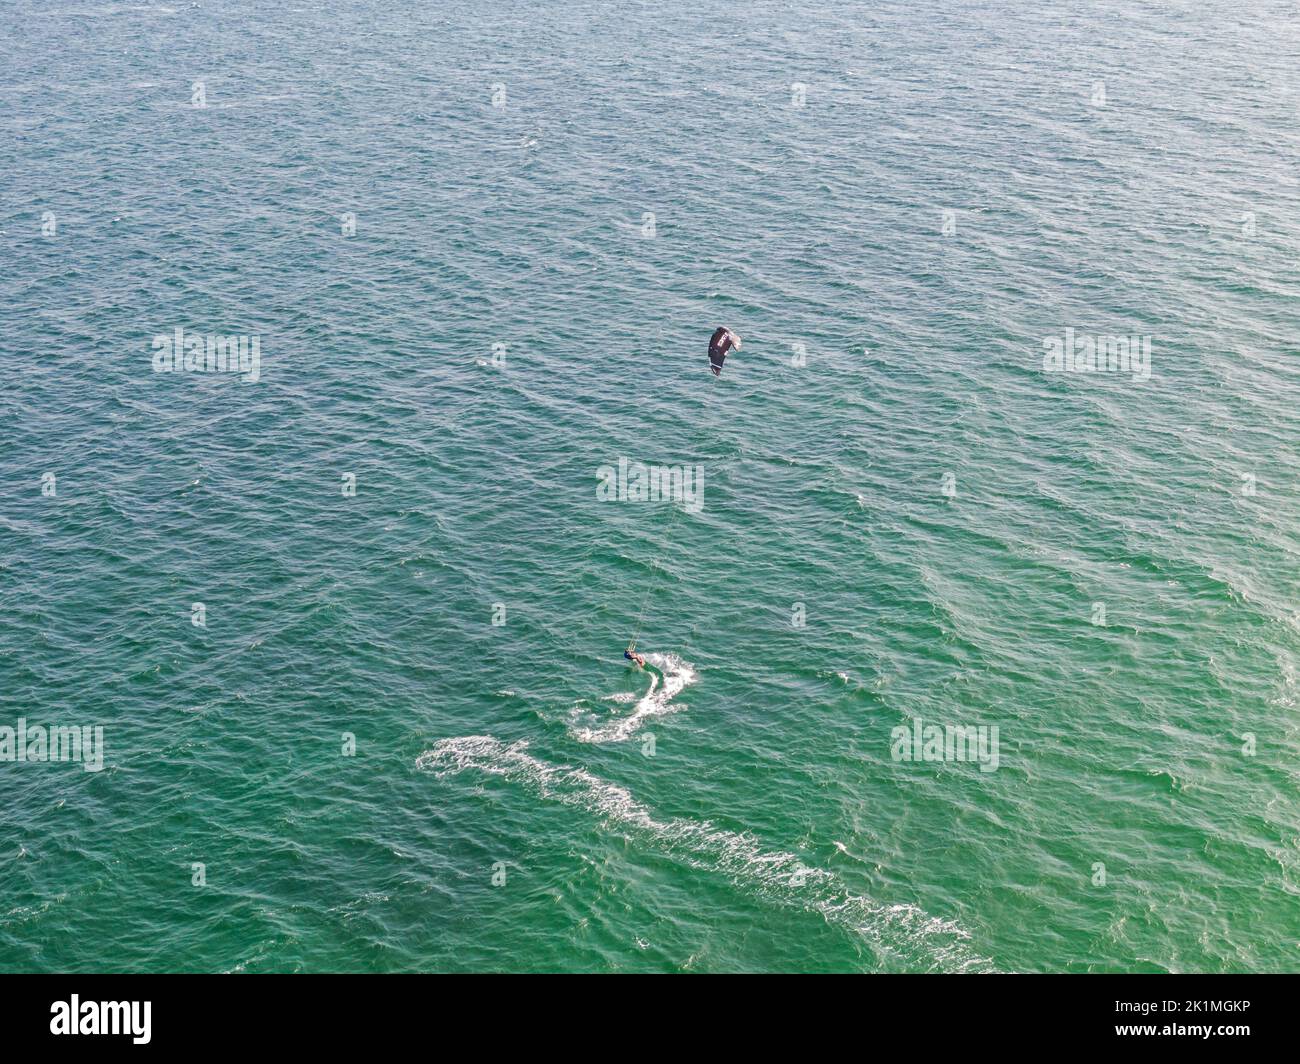 Kitesurfer / Kiteboarden auf offenem Meer Luftaufnahme Wassersport Foto de stock